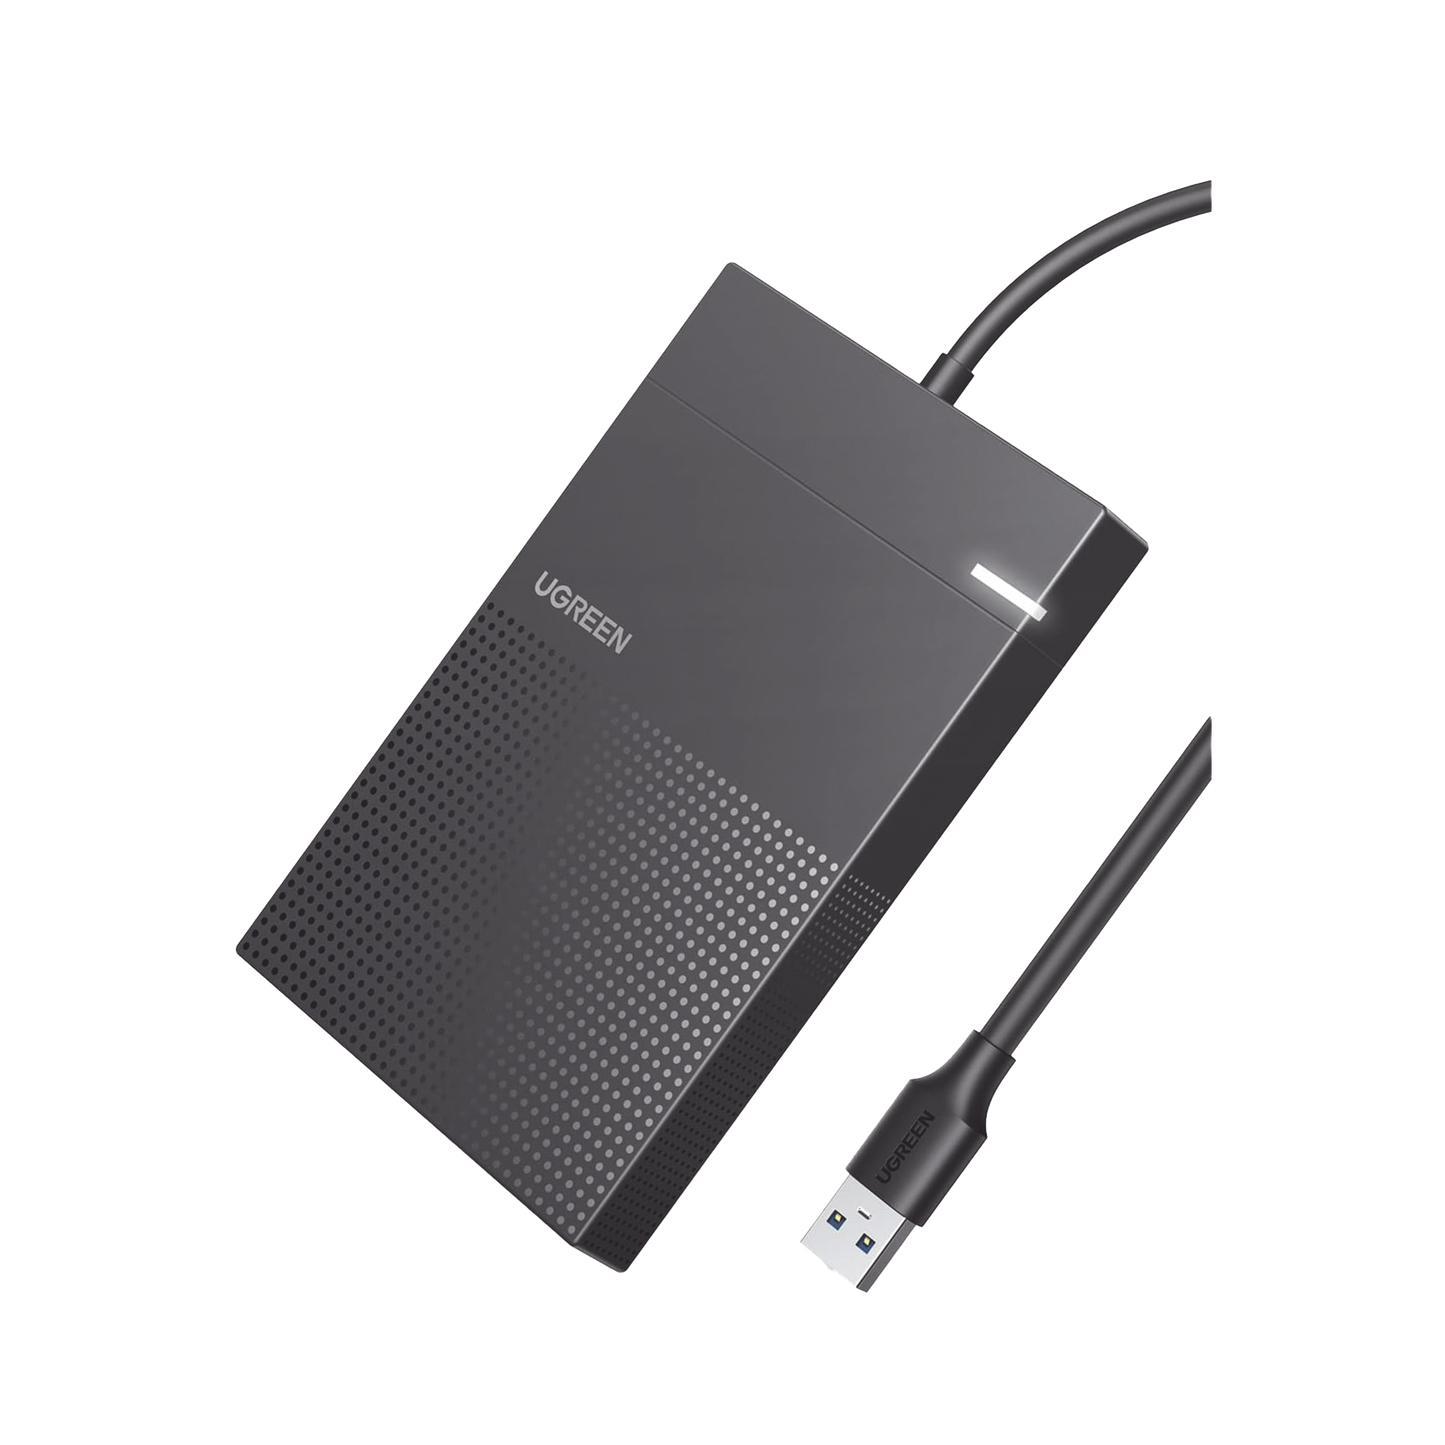 Carcasa de Disco Duro 2.5'' (Enclosure) / Adecuado para HDD y SSD de 2.5” / Chip Inteligente / UASP & TRIM / Led Indicador / ABS / Hibernación Automática / Compatible con SATA I II III, HDD, SSD de hasta 6TB